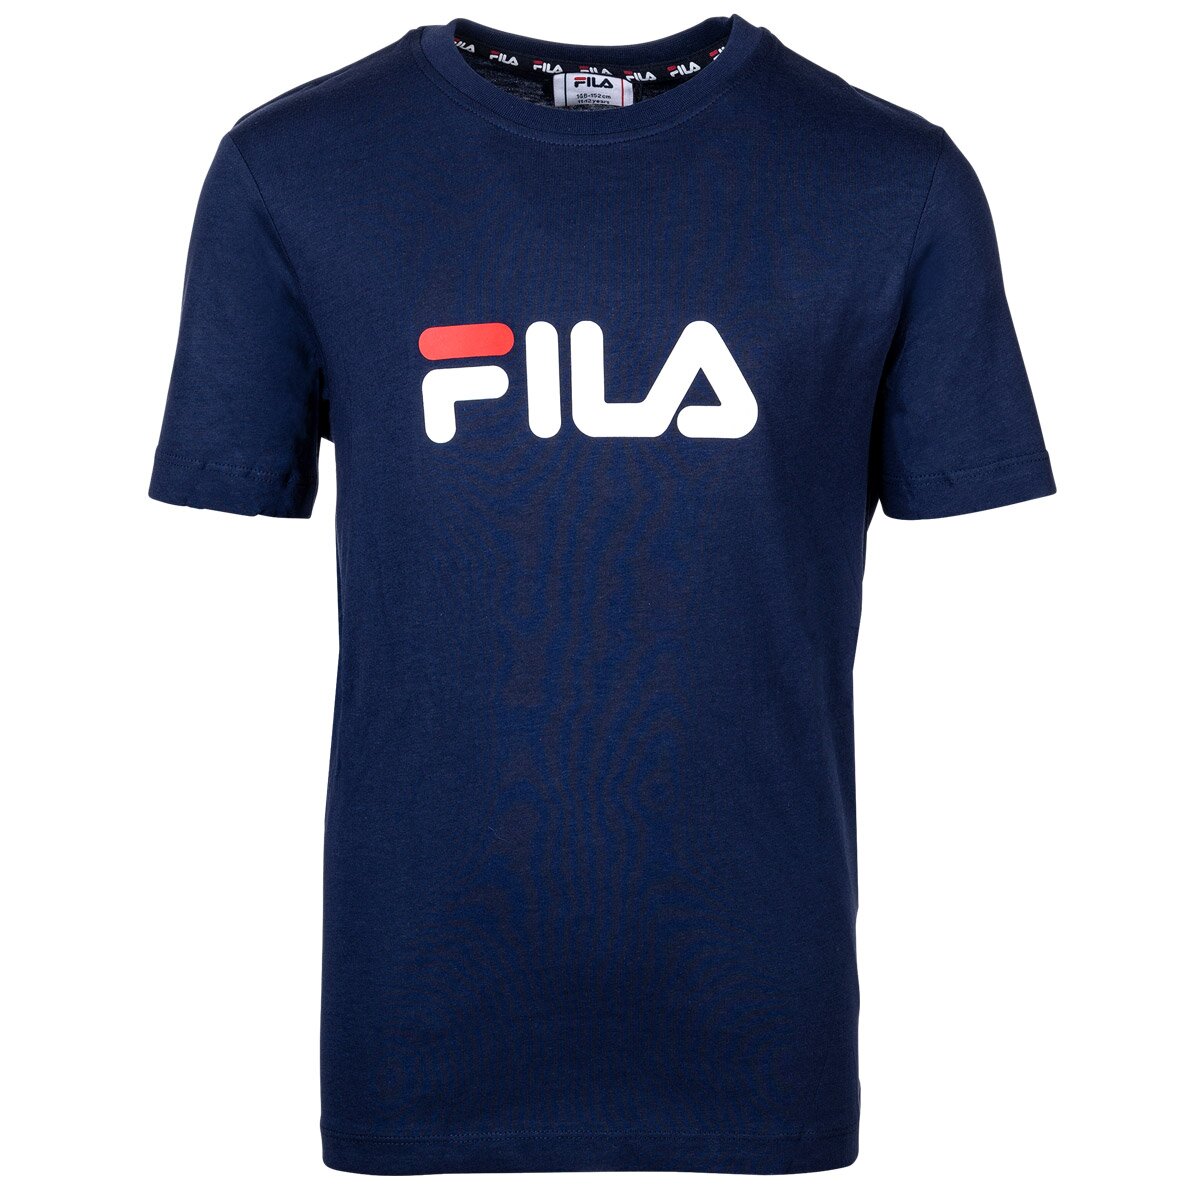 FILA T-Shirt für Kinder - SOLBERG, 9,48 €